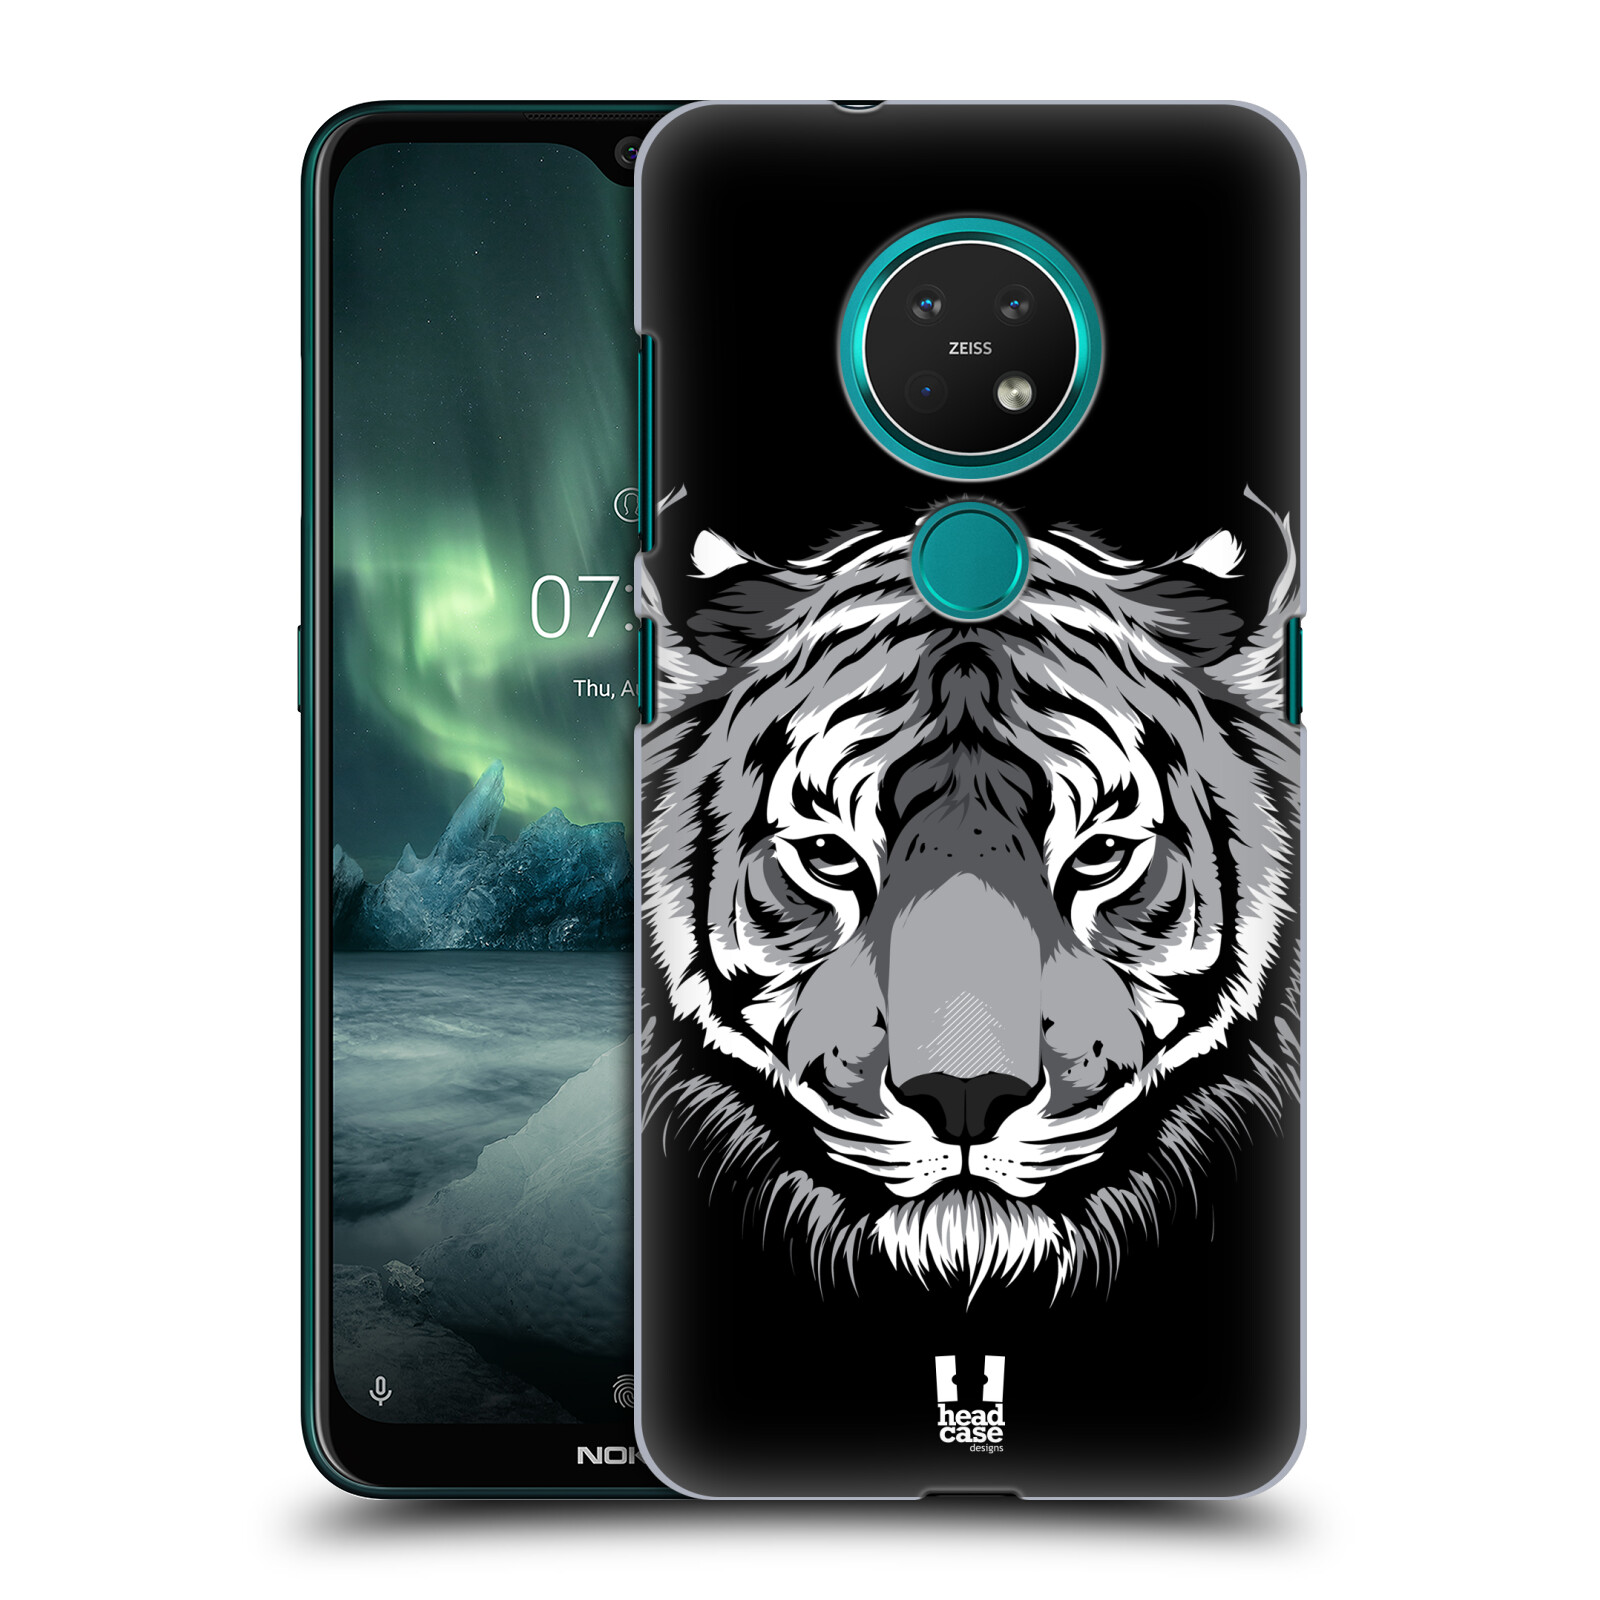 Pouzdro na mobil NOKIA 7.2 - HEAD CASE - vzor Zvíře kreslená tvář 2 tygr